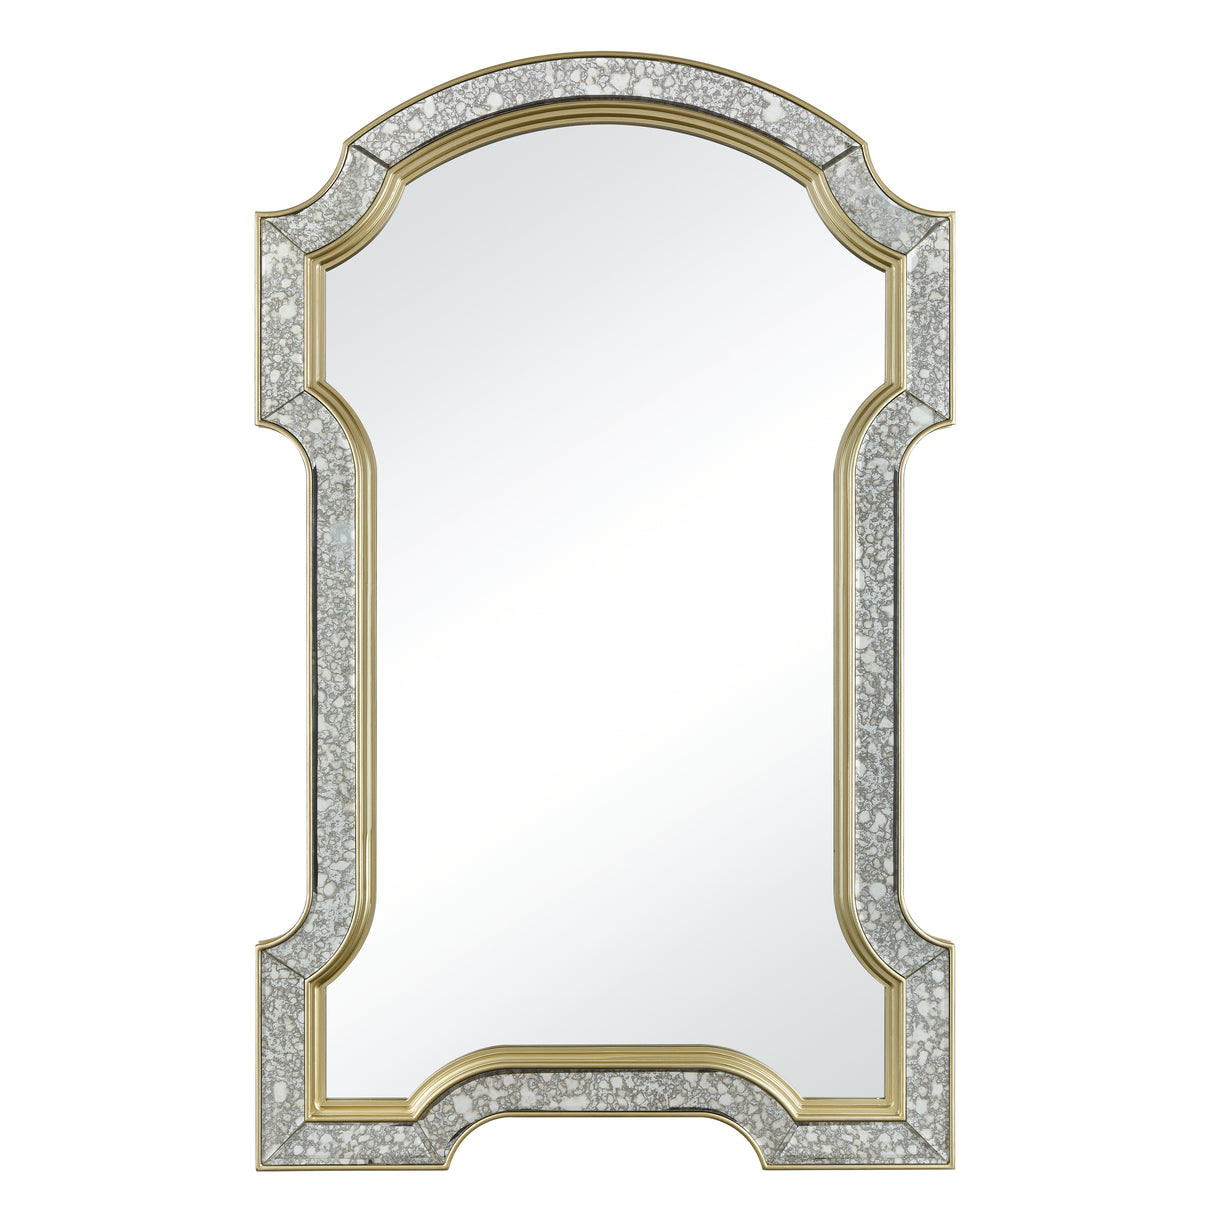 Elk 1114-310 Val-de-Grace Wall Mirror - Antique Mercury